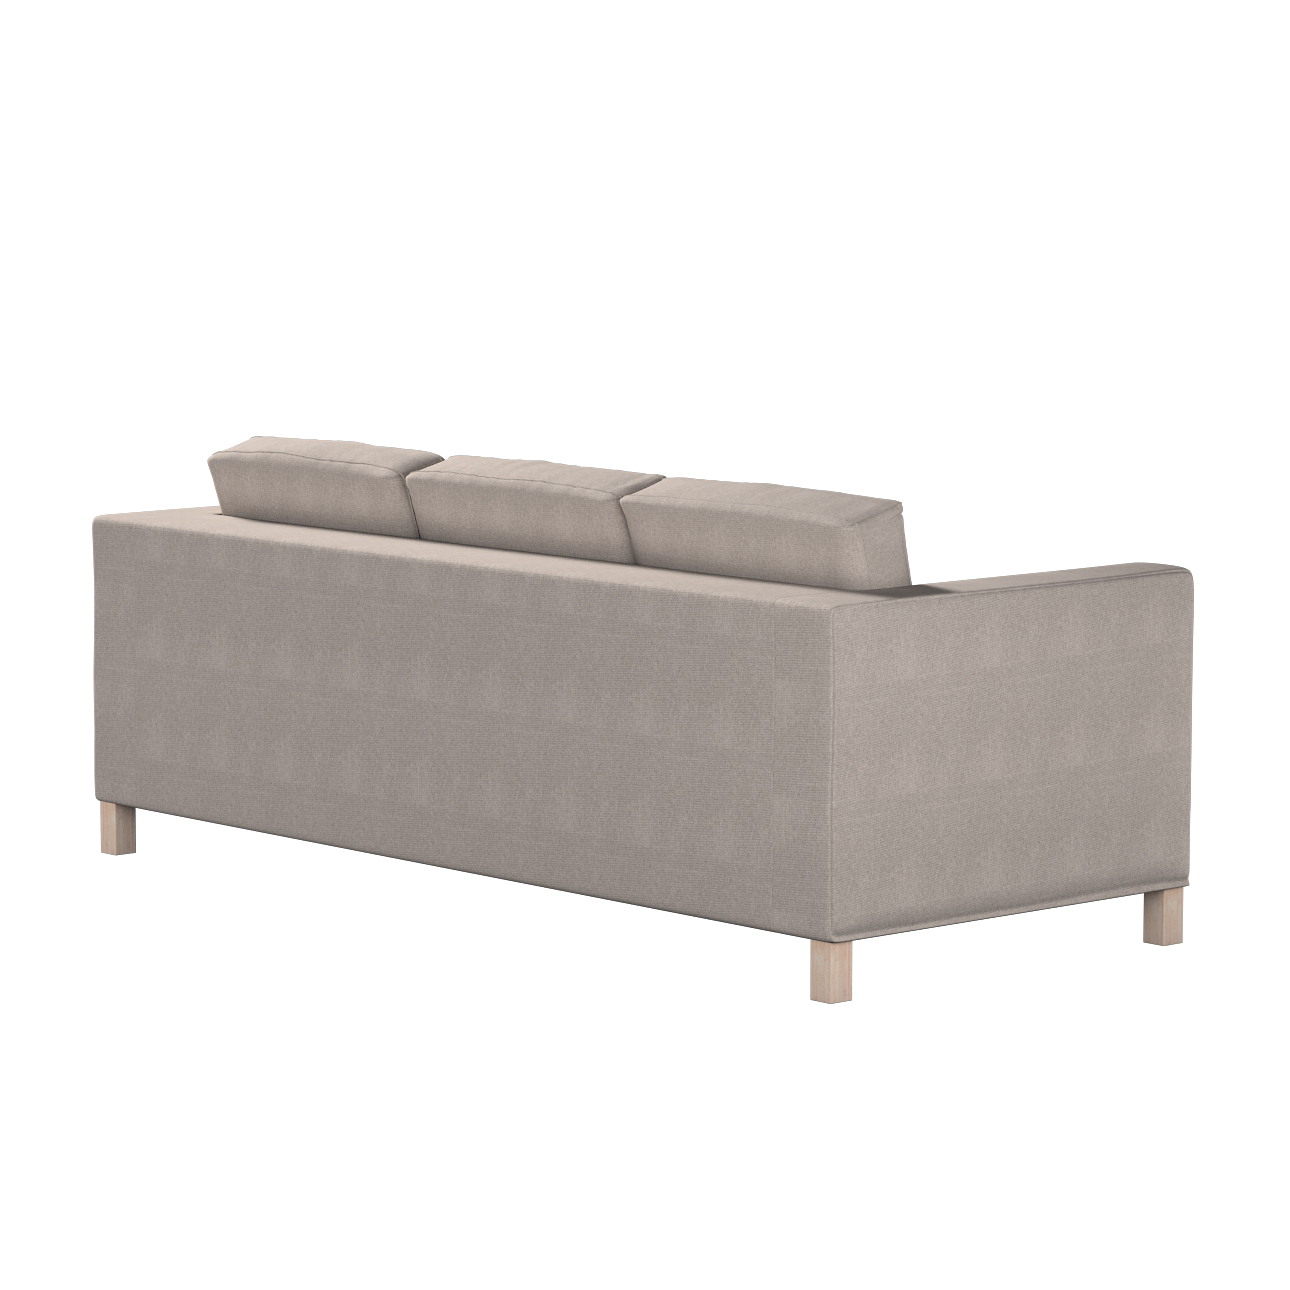 Bezug für Karlanda 3-Sitzer Sofa nicht ausklappbar, kurz, beige-grau, Bezug günstig online kaufen